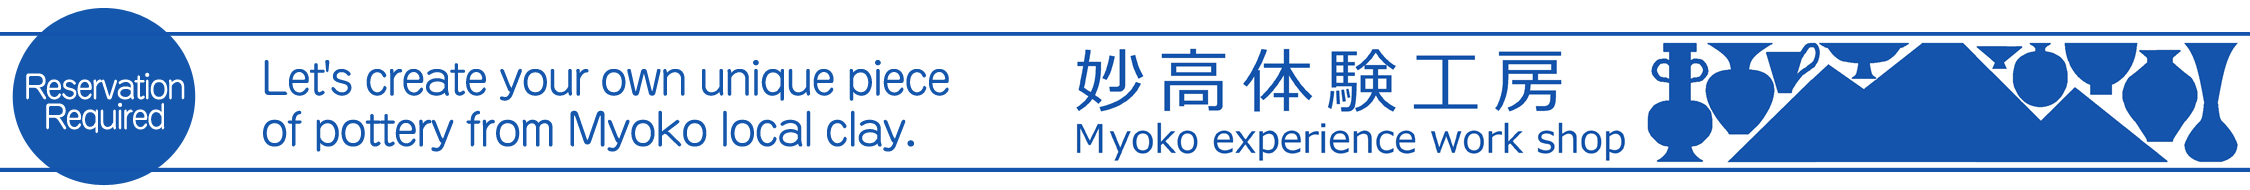 Myoko experience workshop